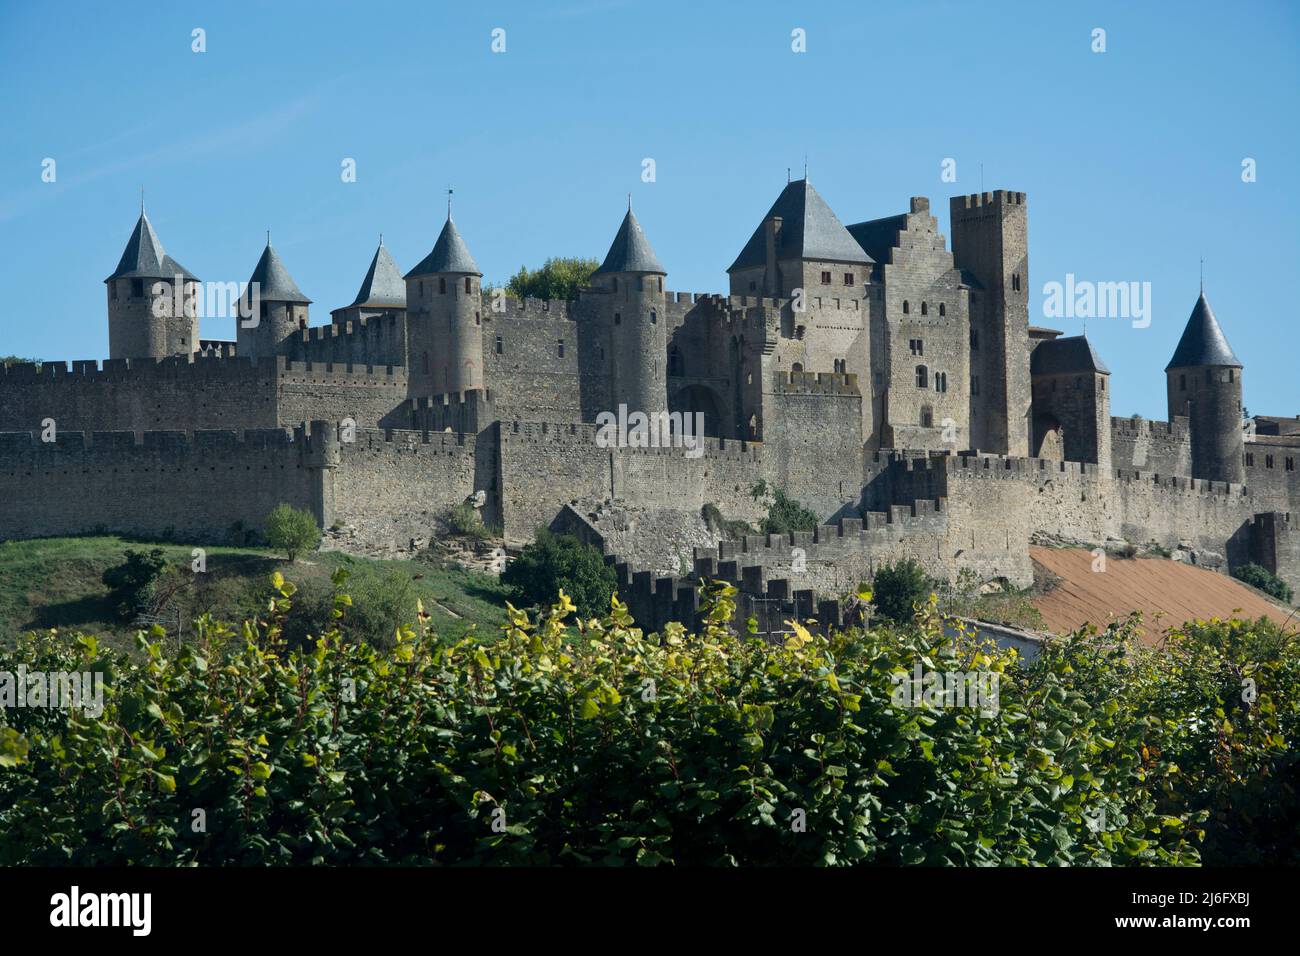 Die Massive Festungsstadt von Carcassonne im Südwesen Frankreichs Foto Stock